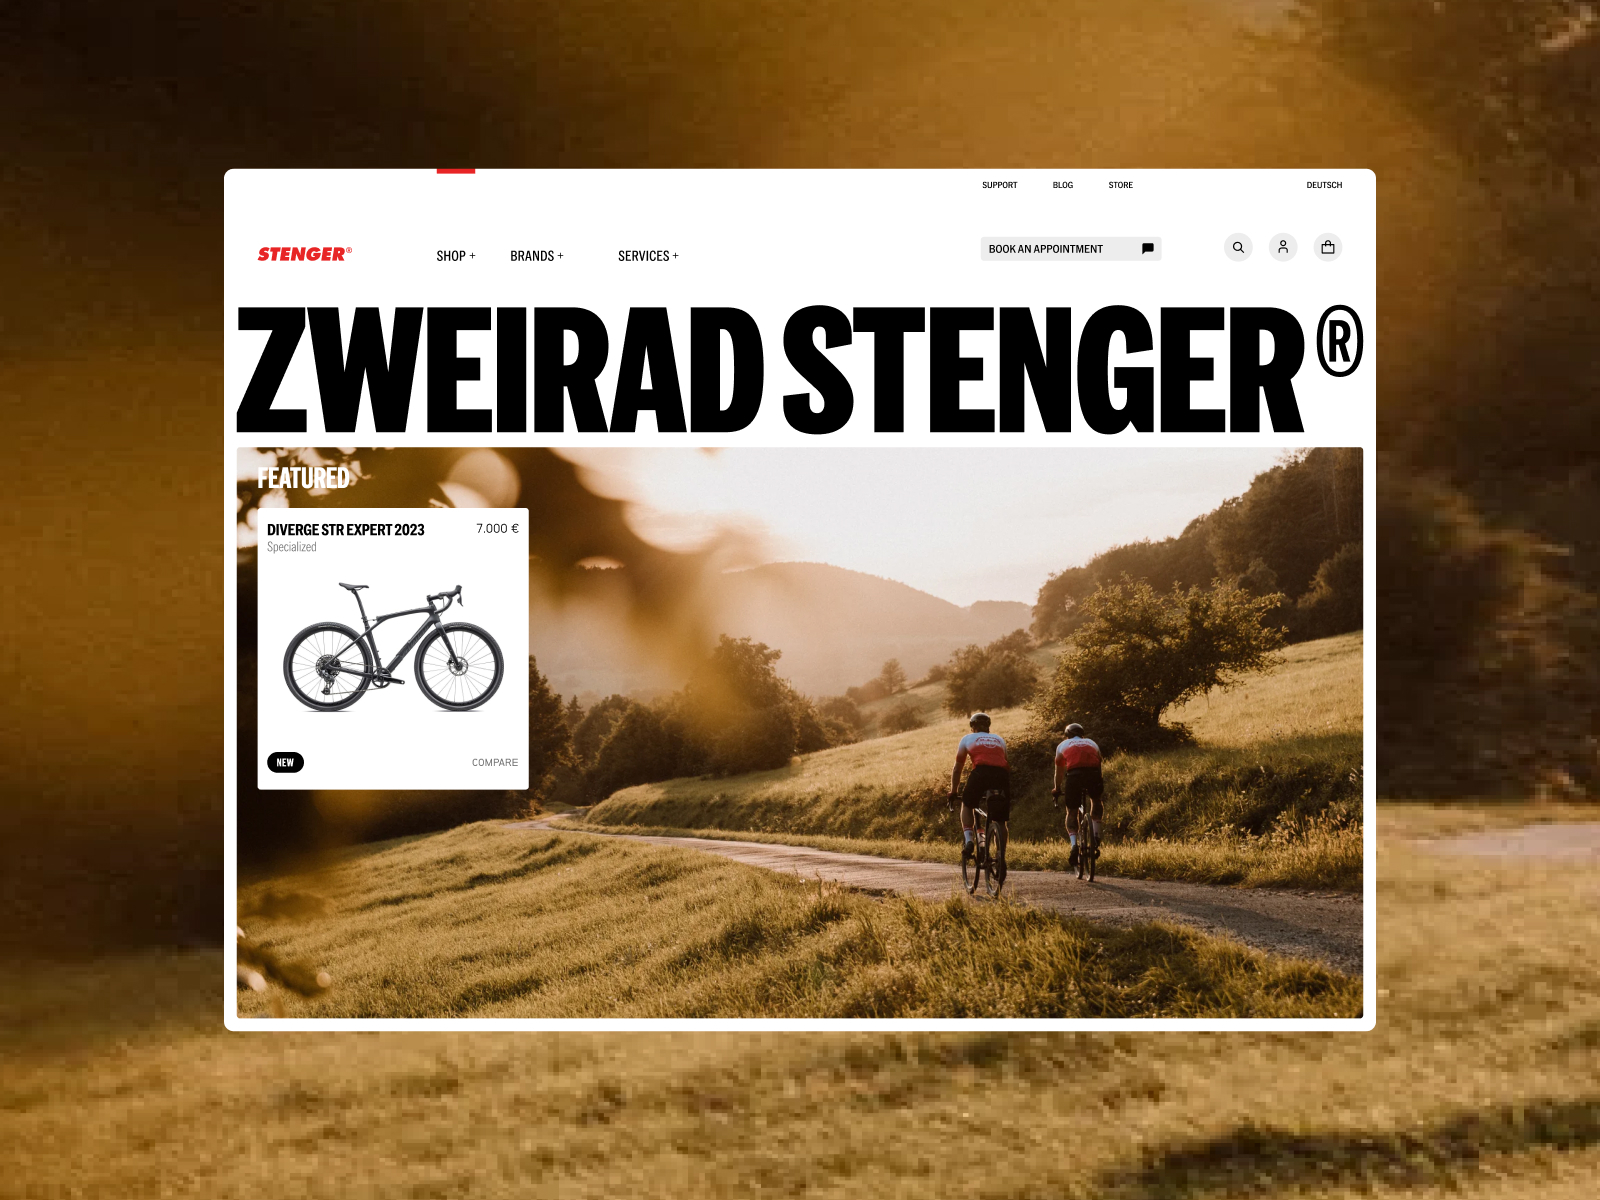 Stenger Bike